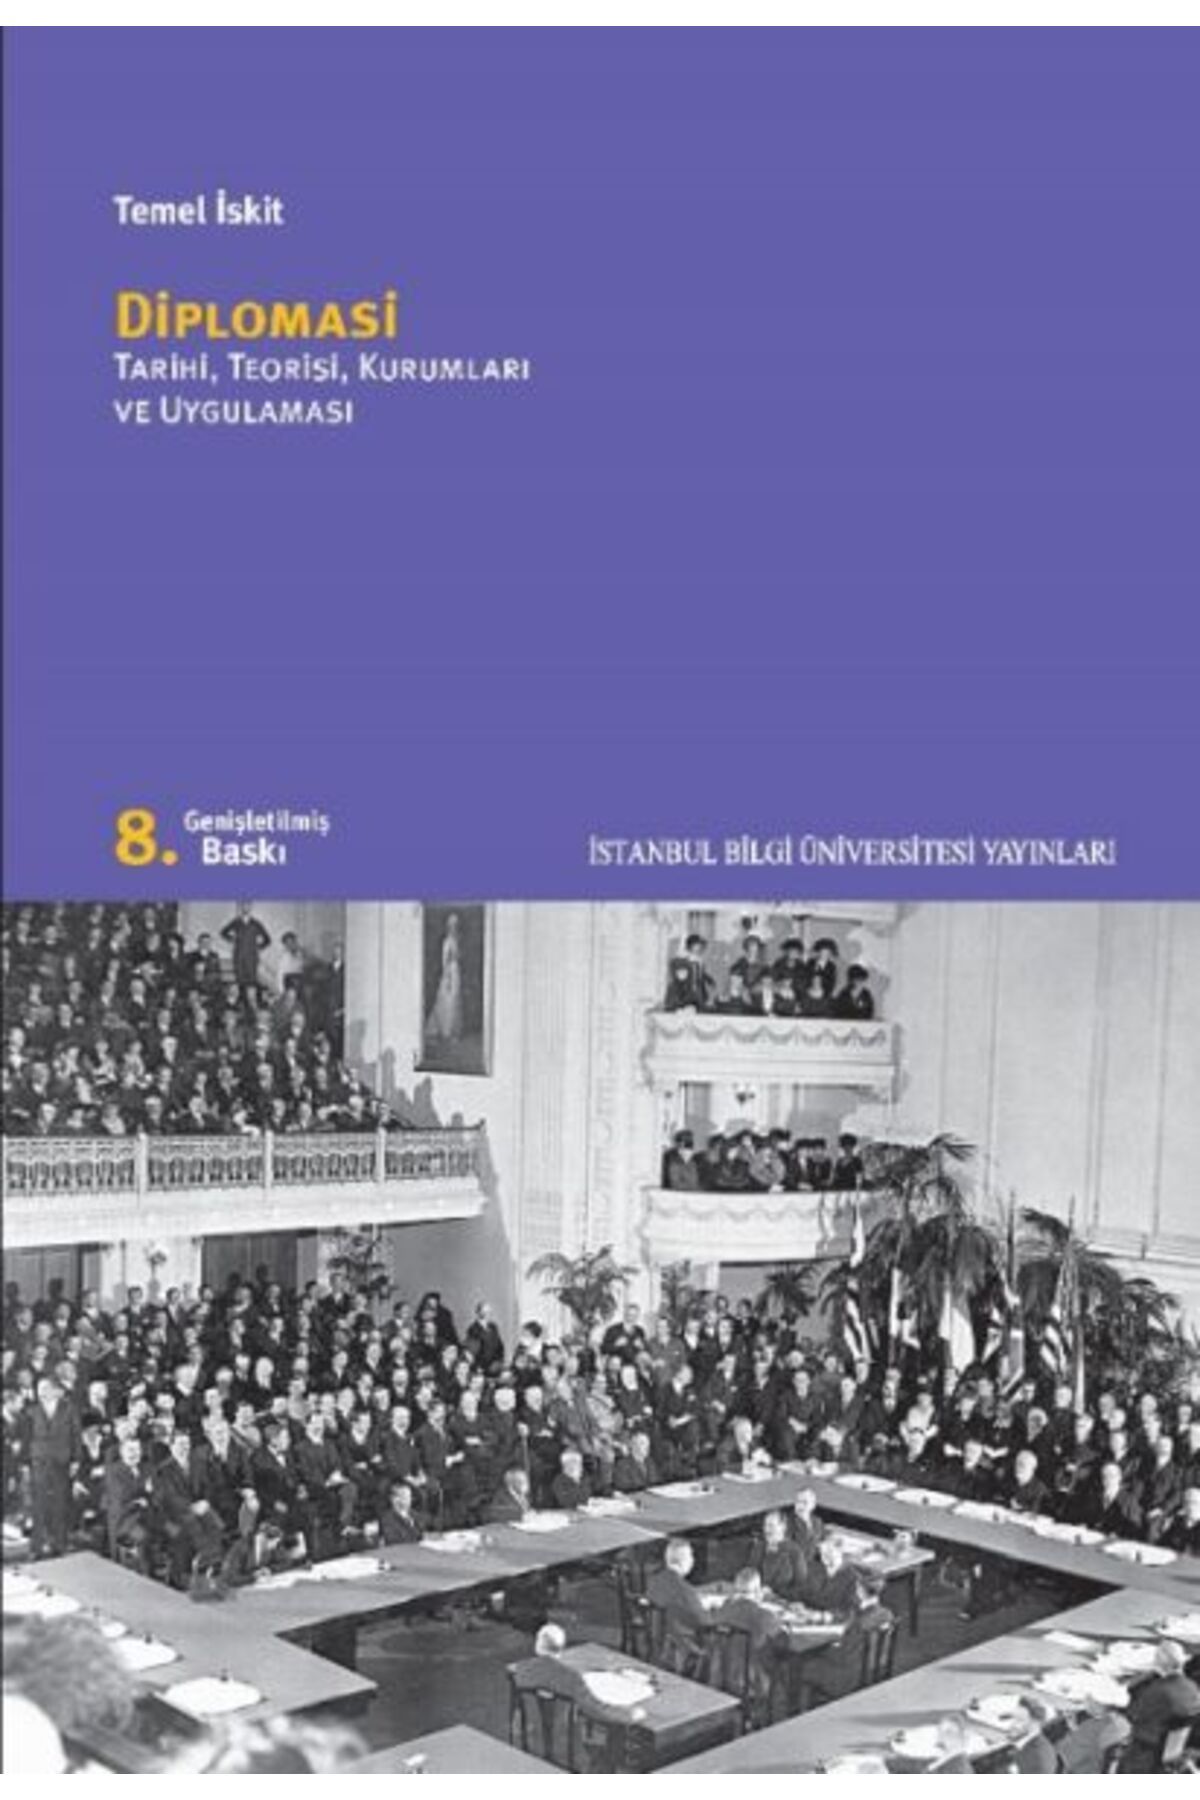 İstanbul Bilgi Üniversitesi Yayınları Diplomasi Tarihi İstanbul Bilgi Üniversitesi Ya kitap